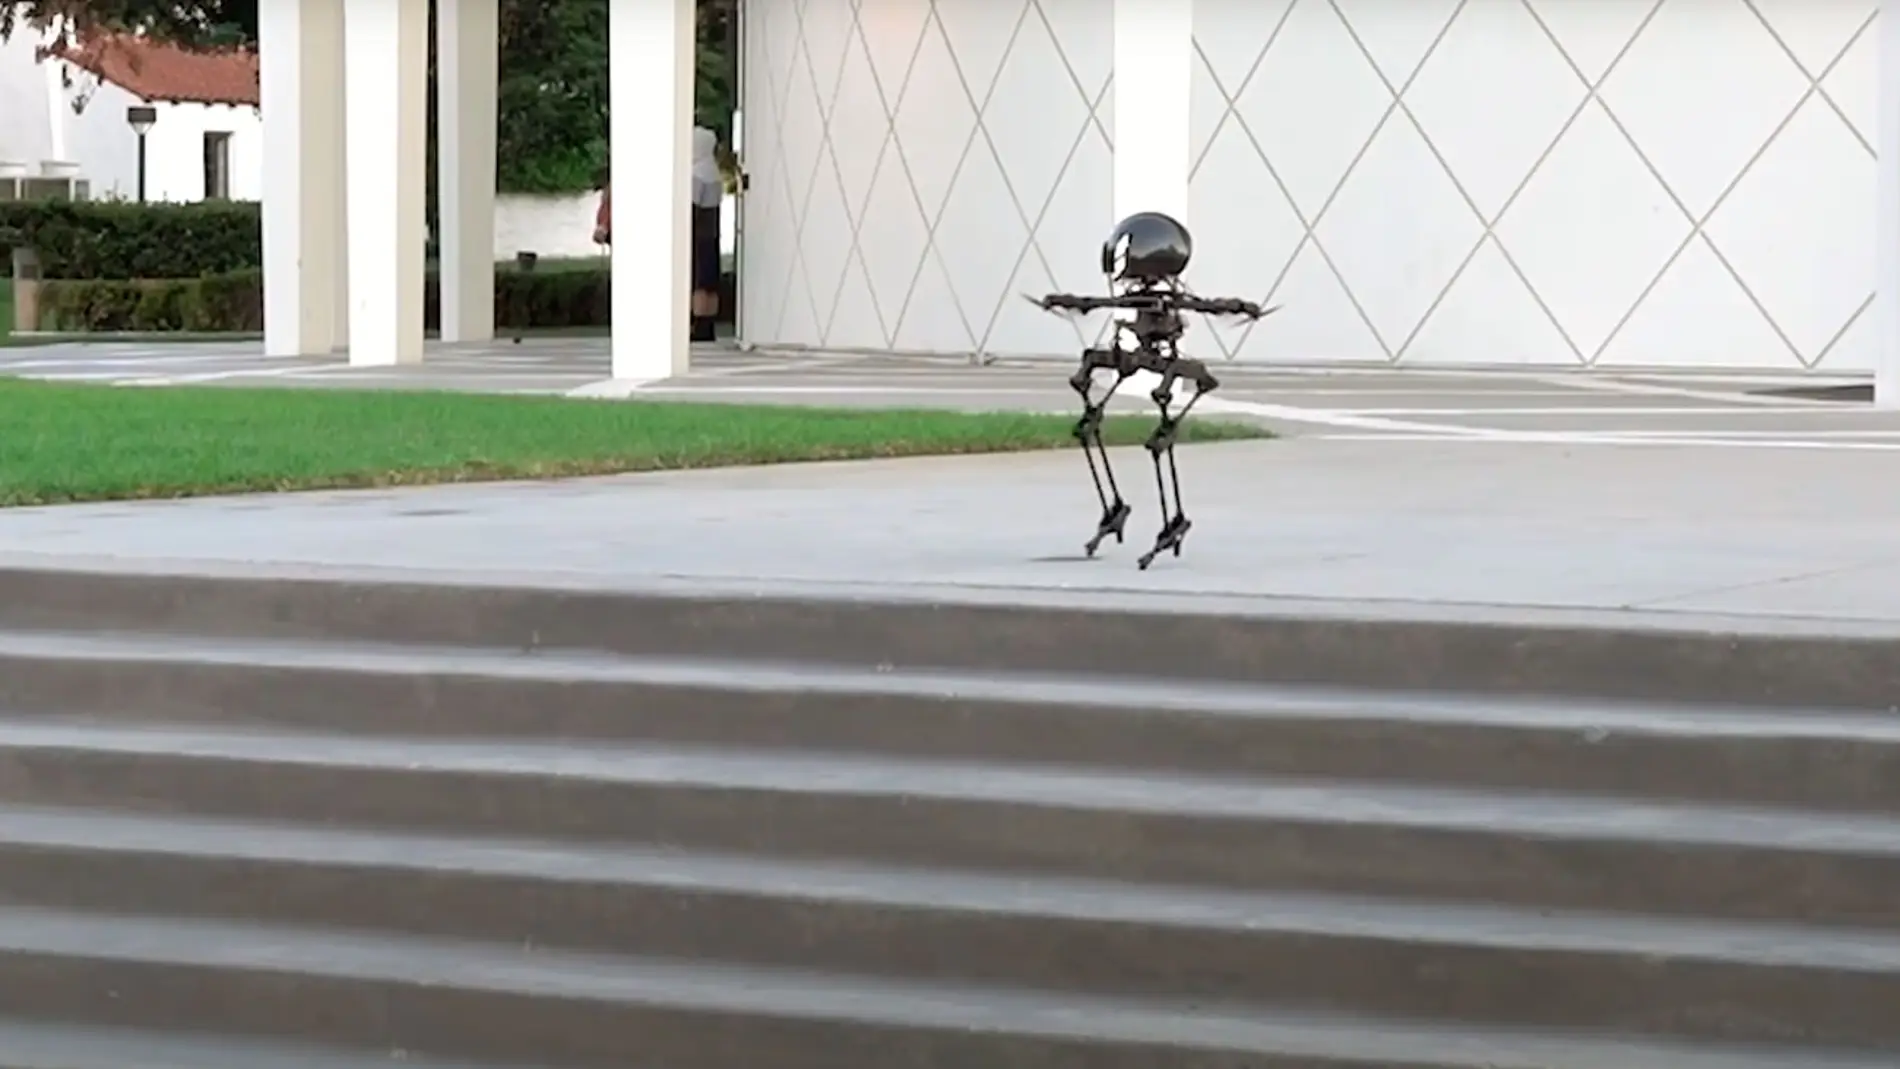 Así es Leonardo, el híbrido de robot y dron que camina como un humanoide